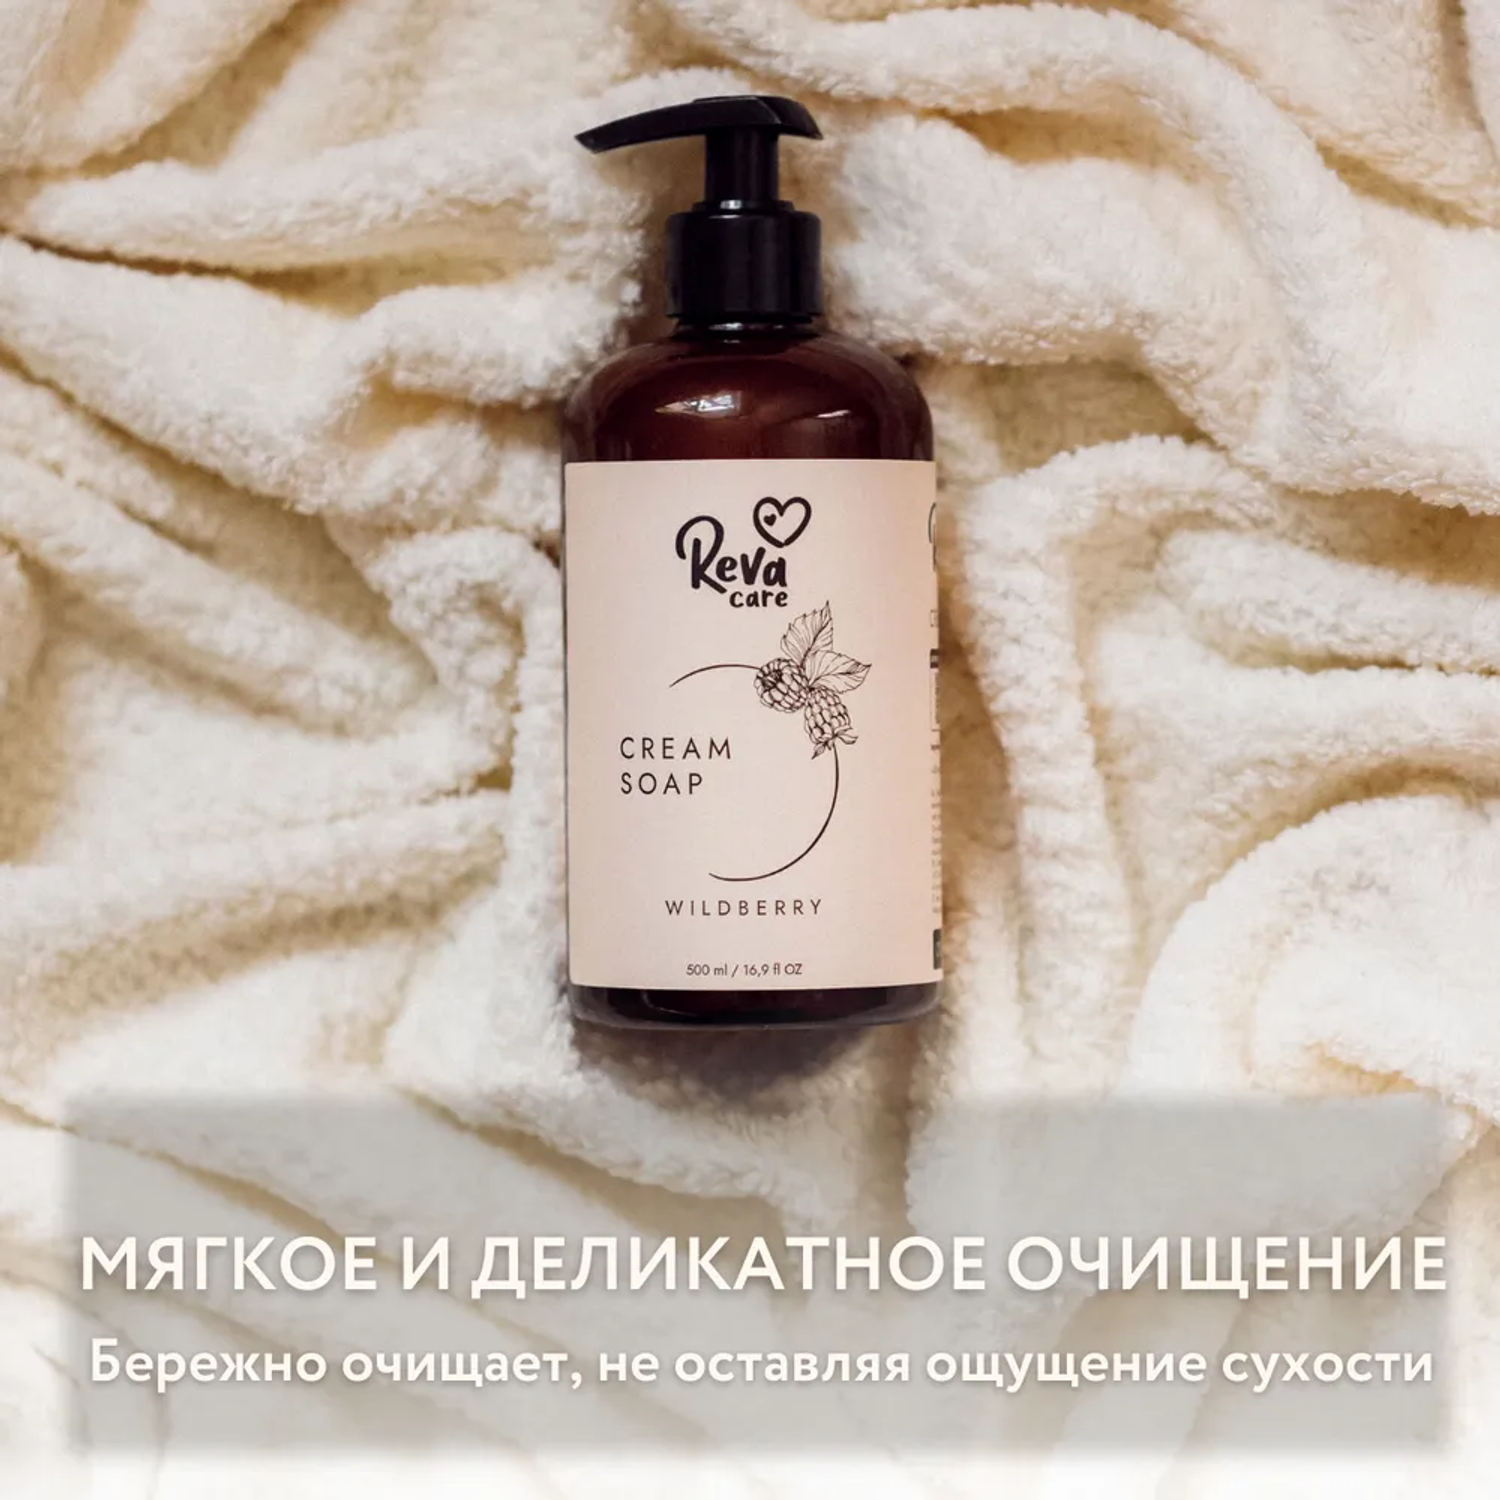 Жидкое мыло Reva Care для рук Cream Soap с ароматом ежевики набор 8 шт по 500 мл - фото 5